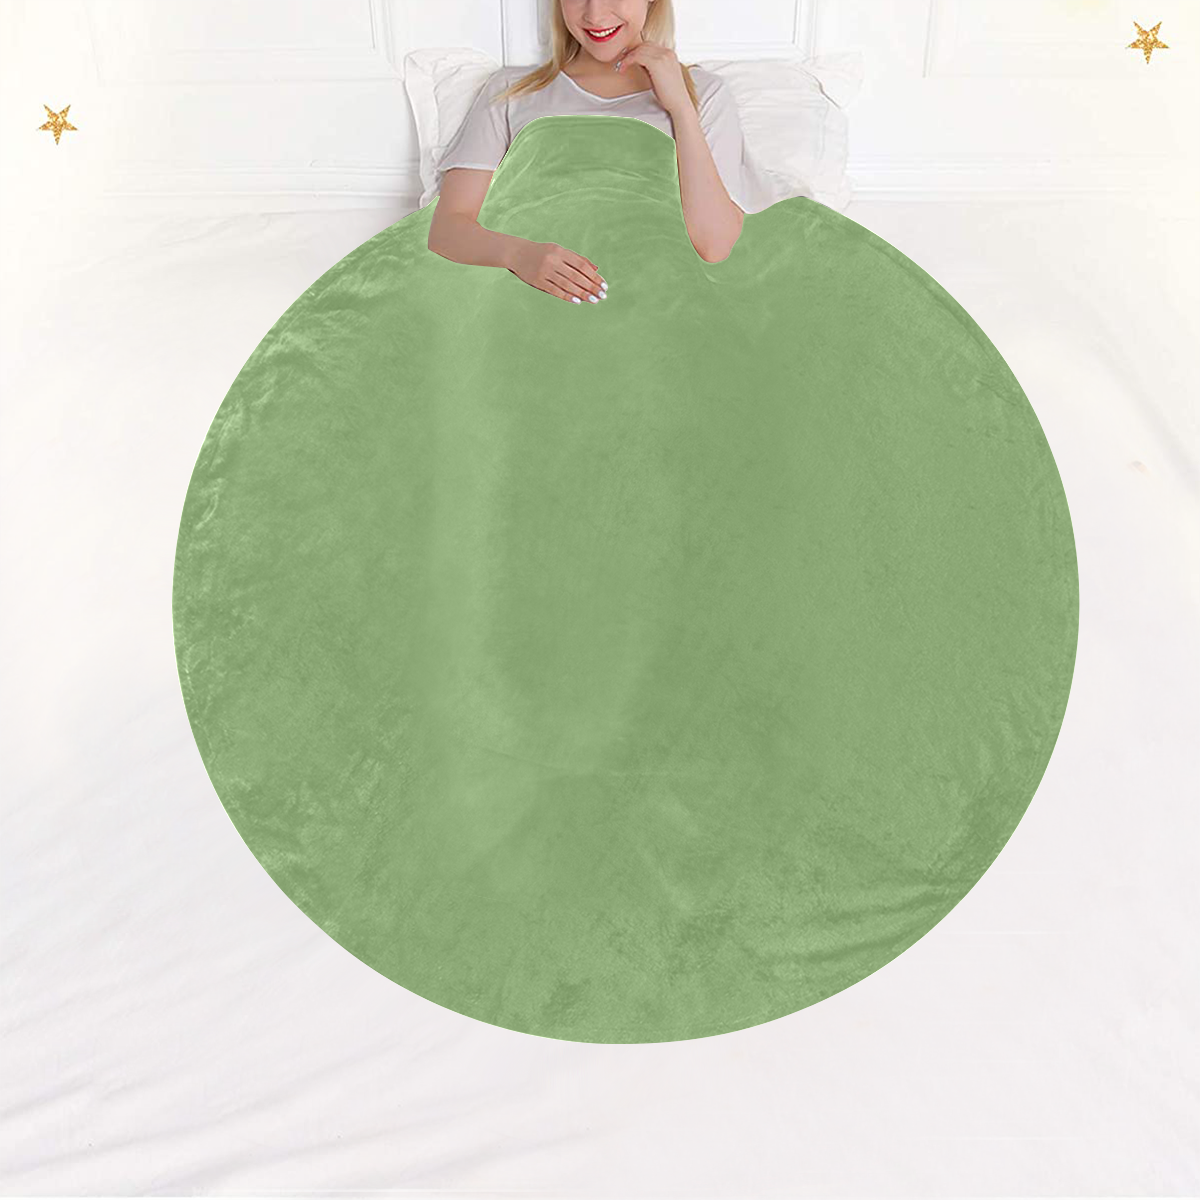 color asparagus Circular Ultra-Soft Micro Fleece Blanket 60"